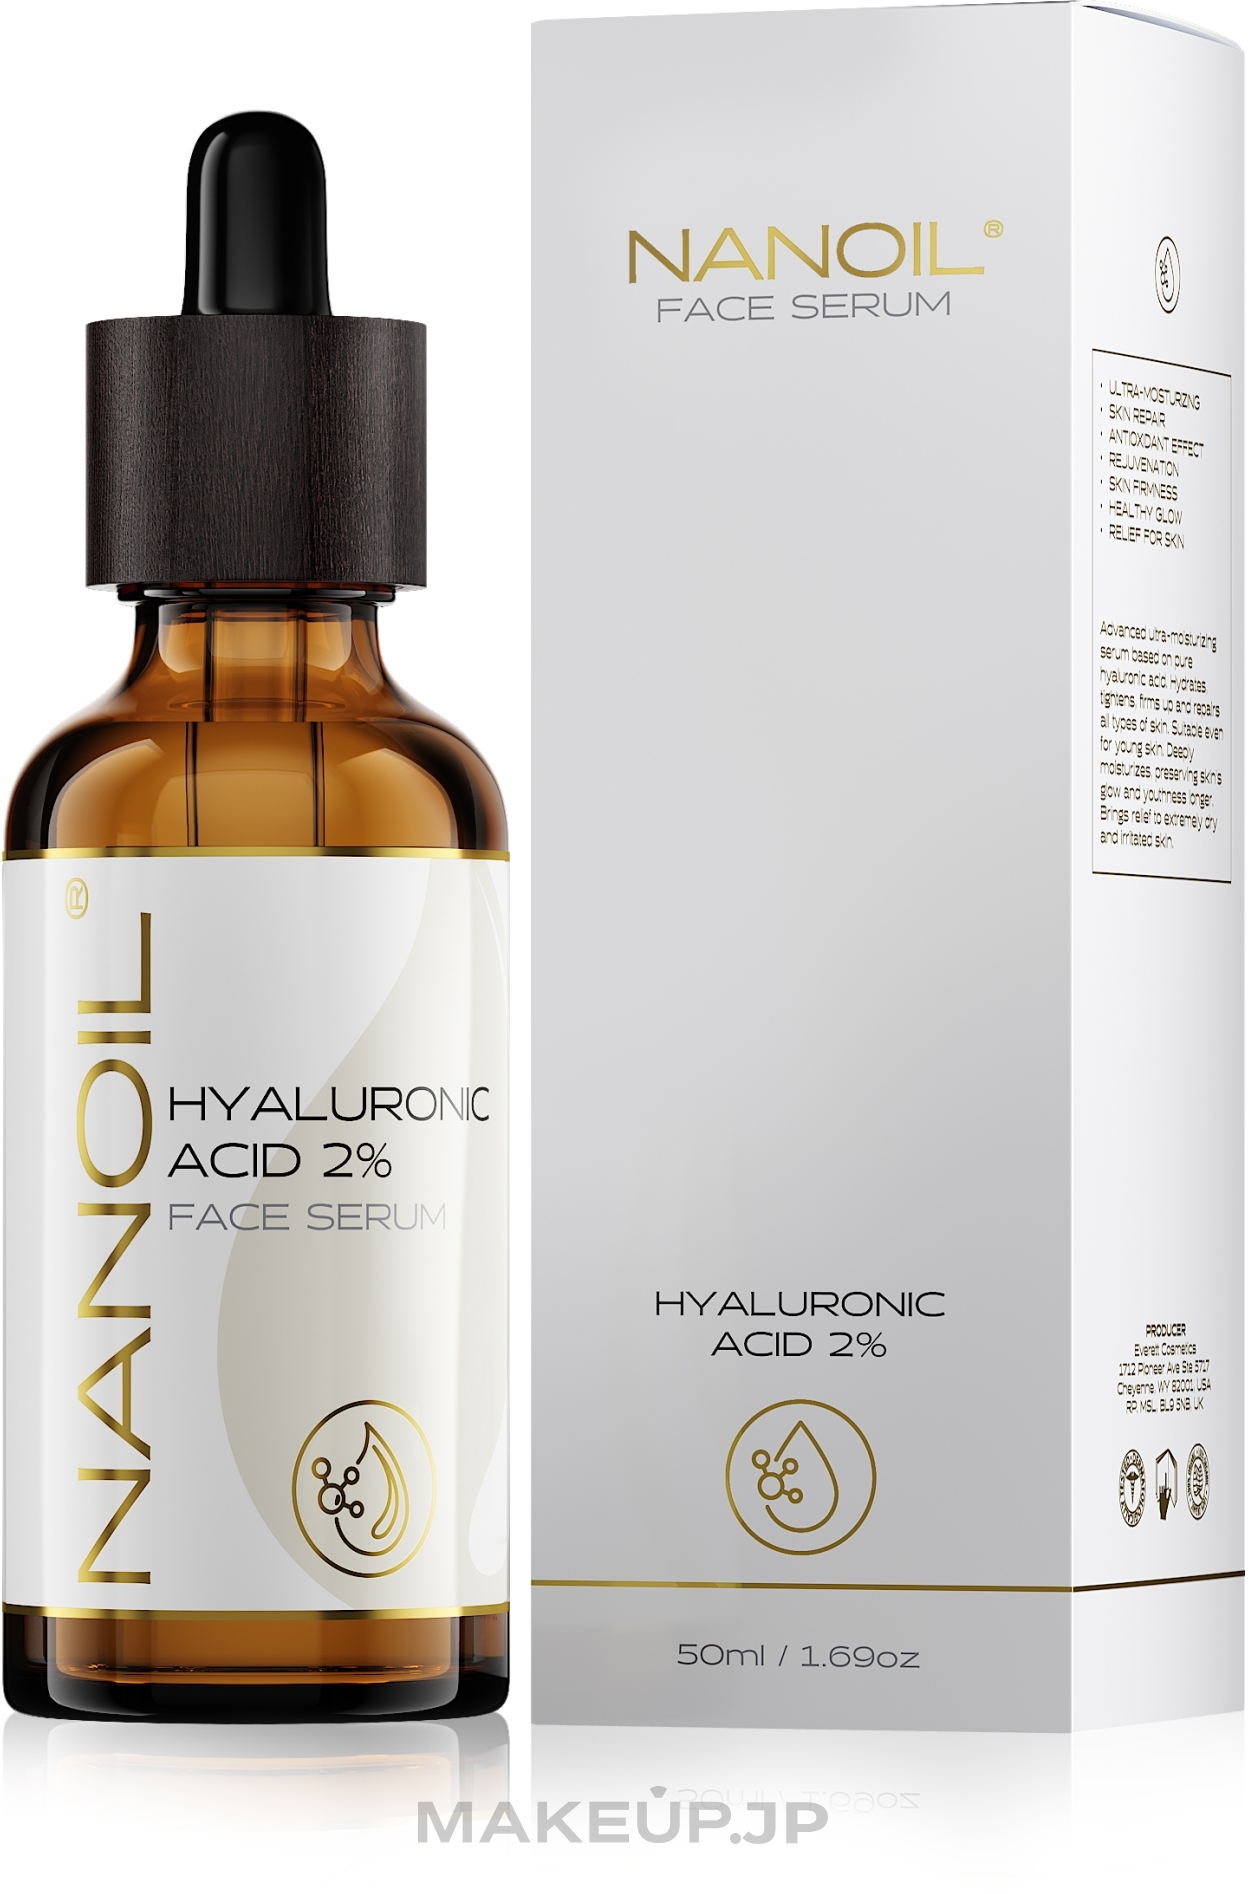 Moisturizing Hyaluronic Acid Facial Serum for All Skin Types - Nanoil Face Serum Hyaluronic Acid 2% — photo 50 ml